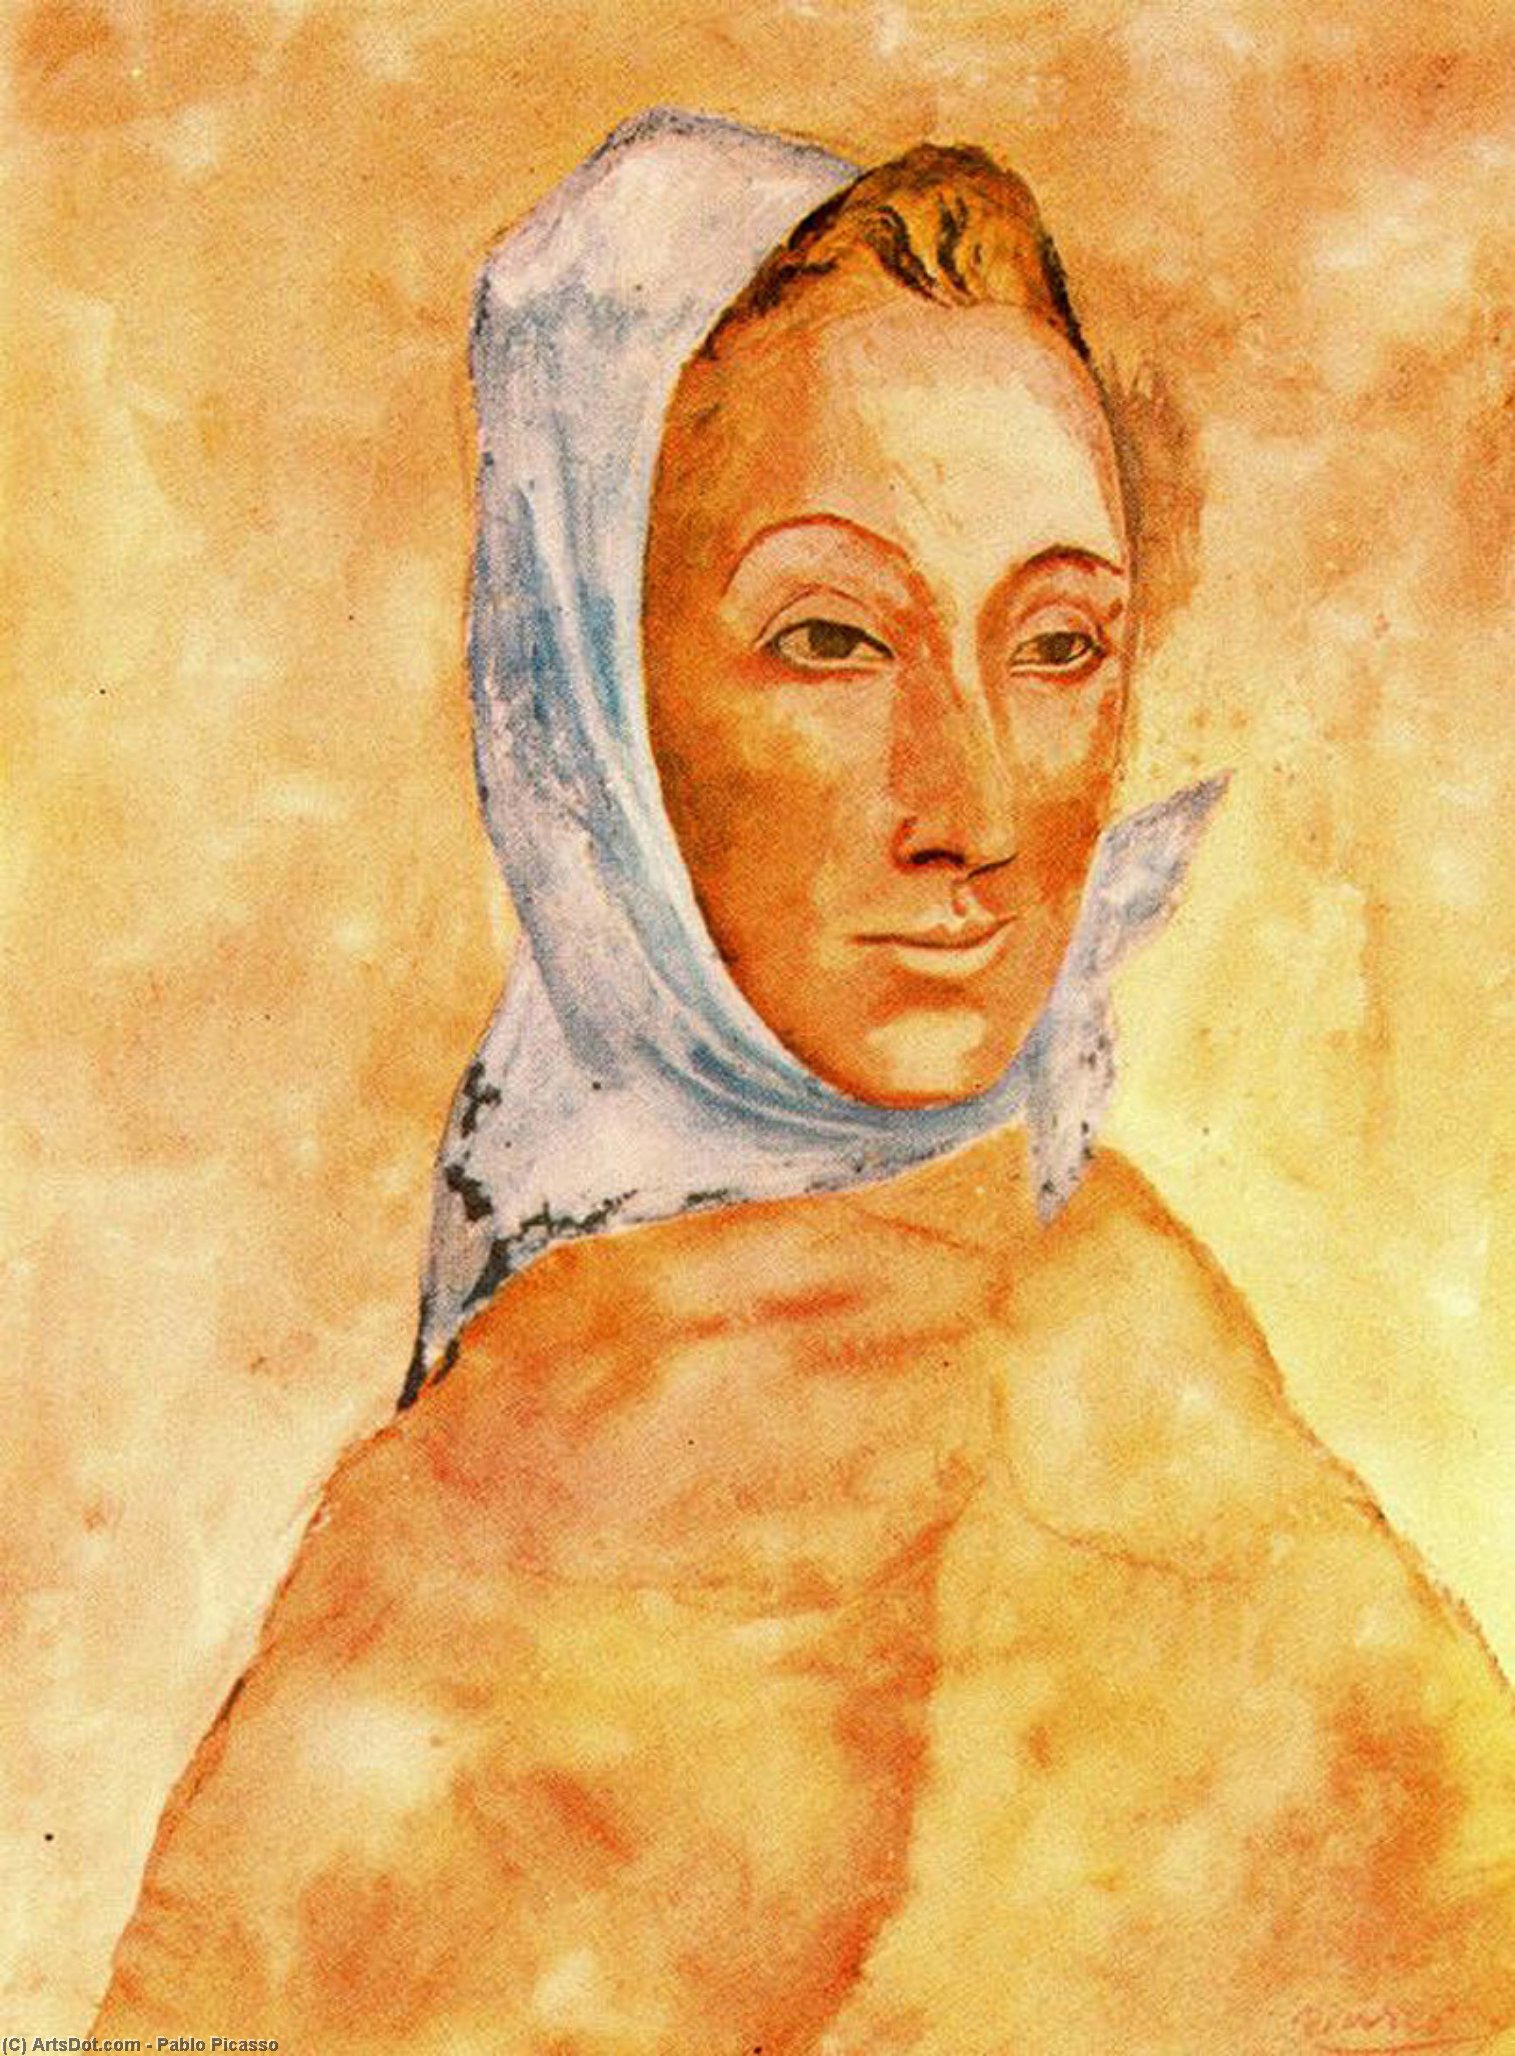 Wikoo.org - موسوعة الفنون الجميلة - اللوحة، العمل الفني Pablo Picasso - Portrait of Fernande Olivier in headscarves